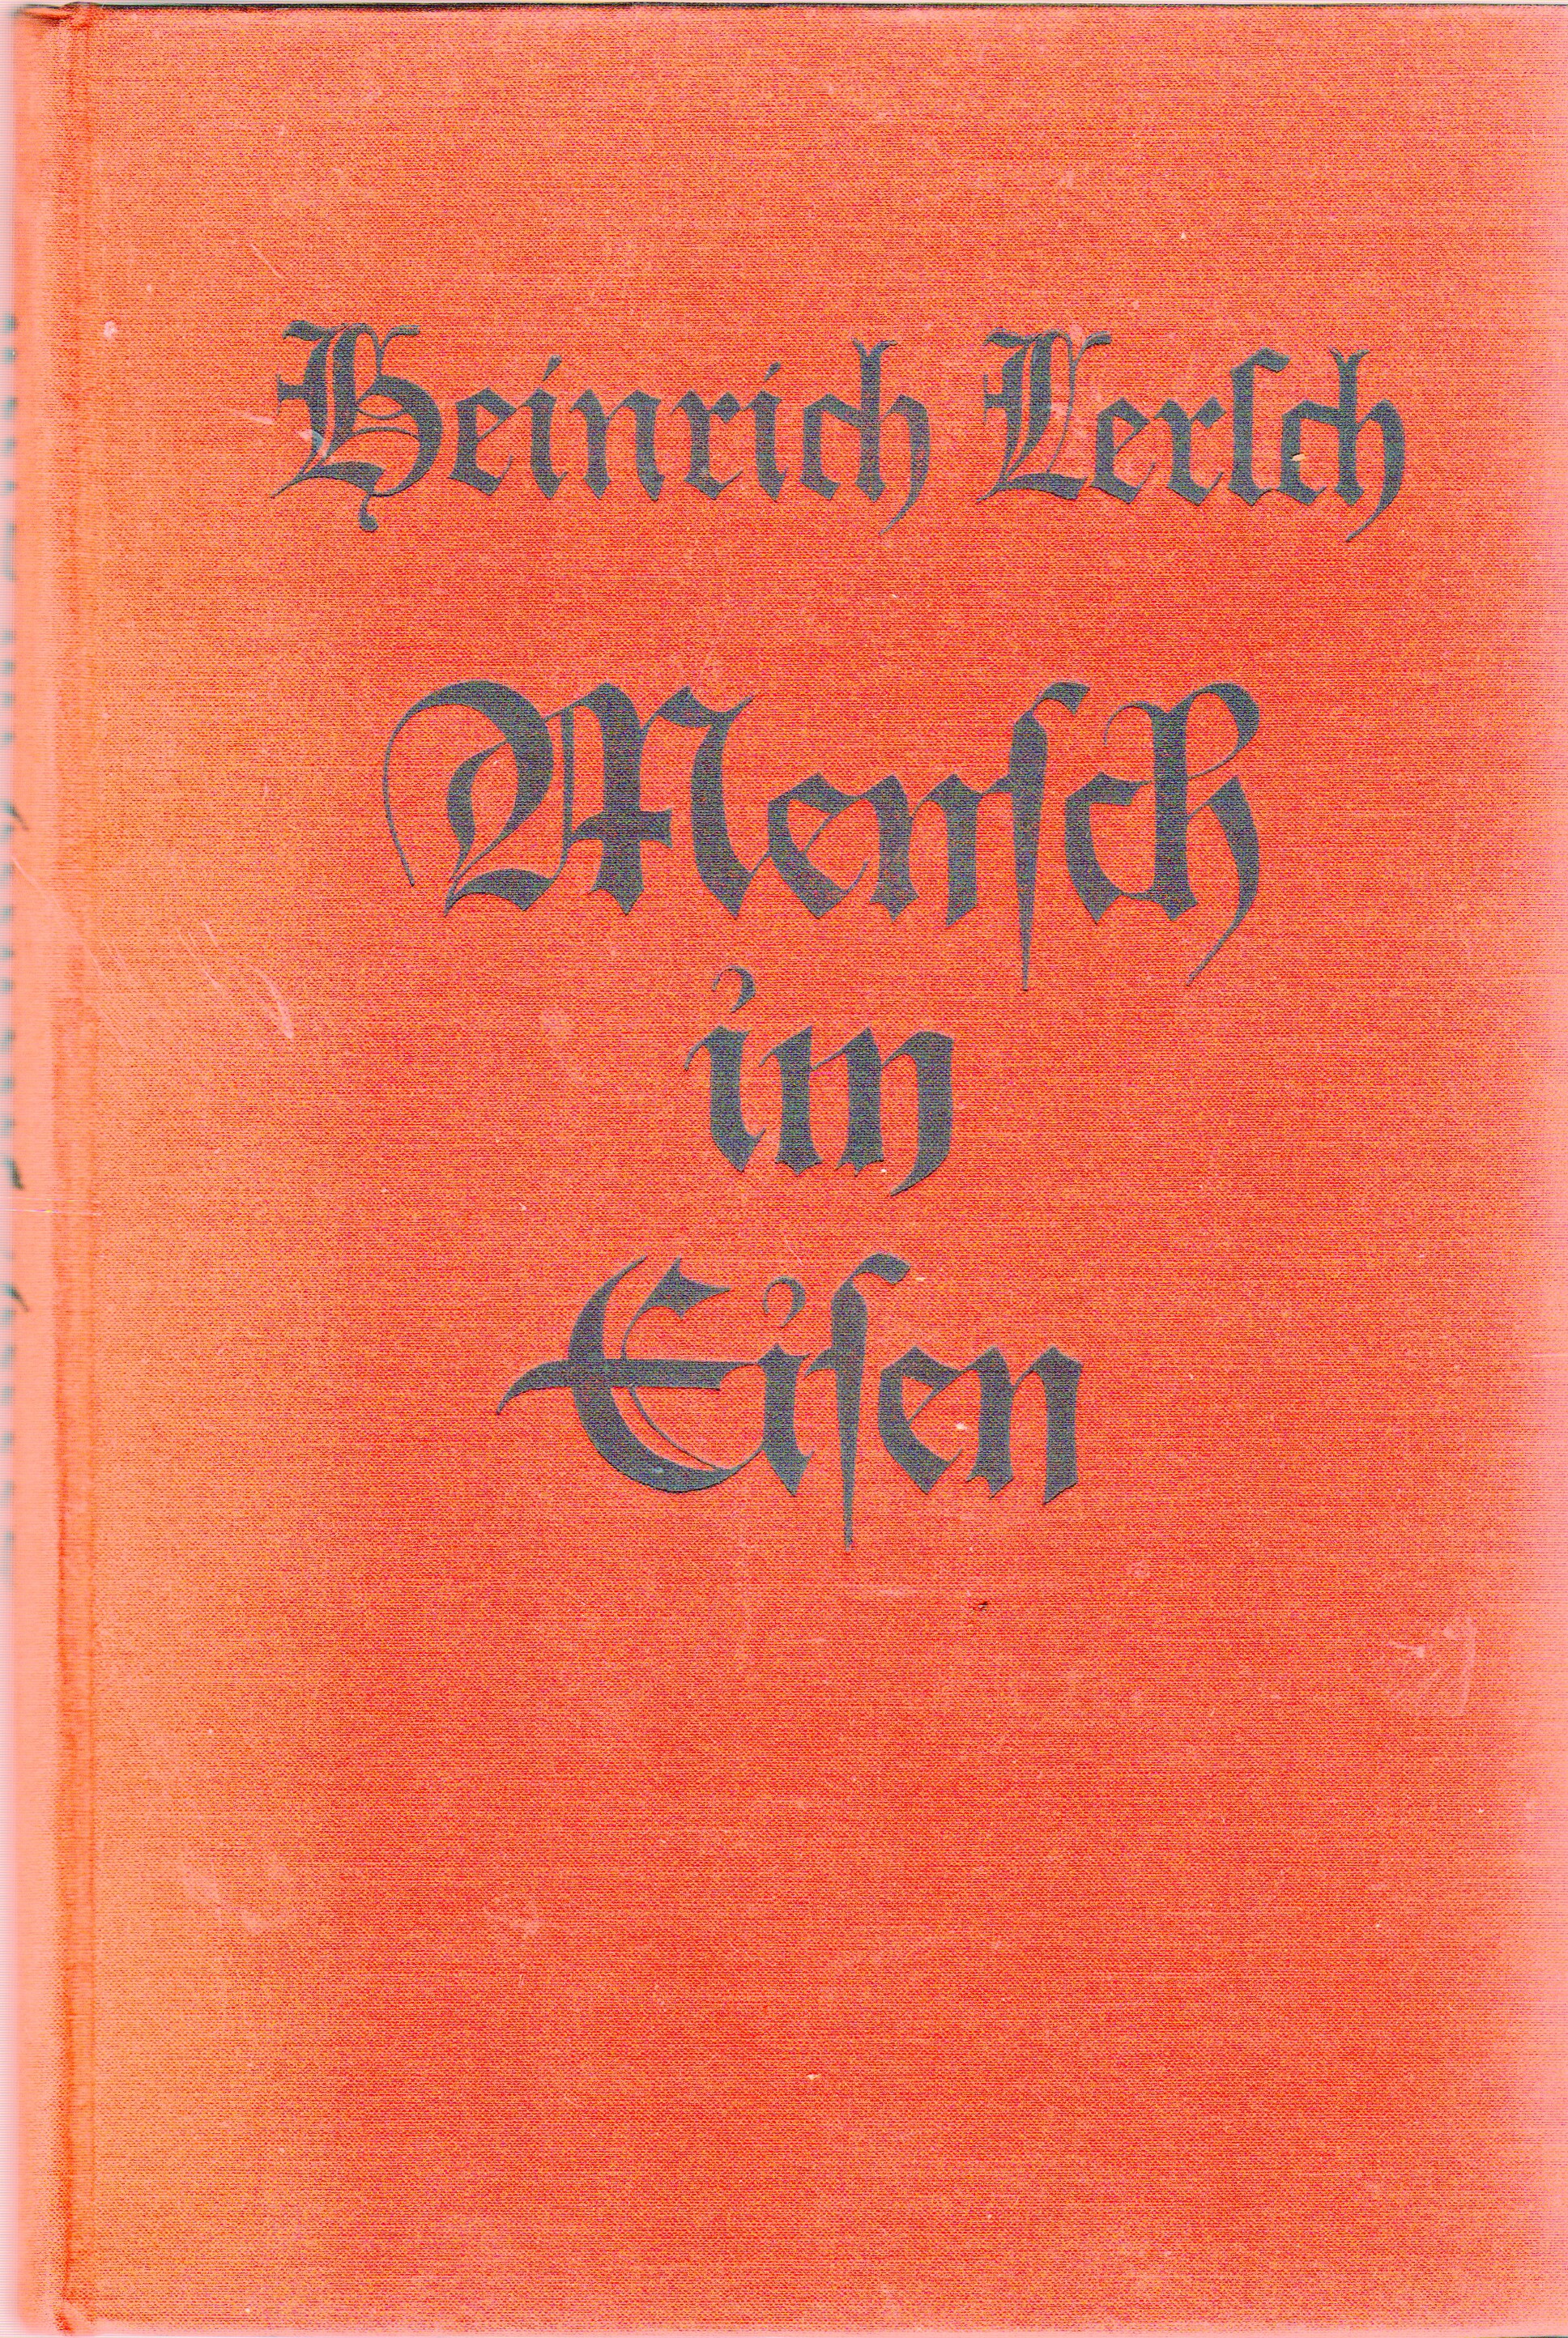 Gedichte Mensch in Eisen: Gesänge vom Volk und Werk, Heinrich Lersch 1925 (Heimatarchiv Bad Bodendorf CC BY-NC-SA)